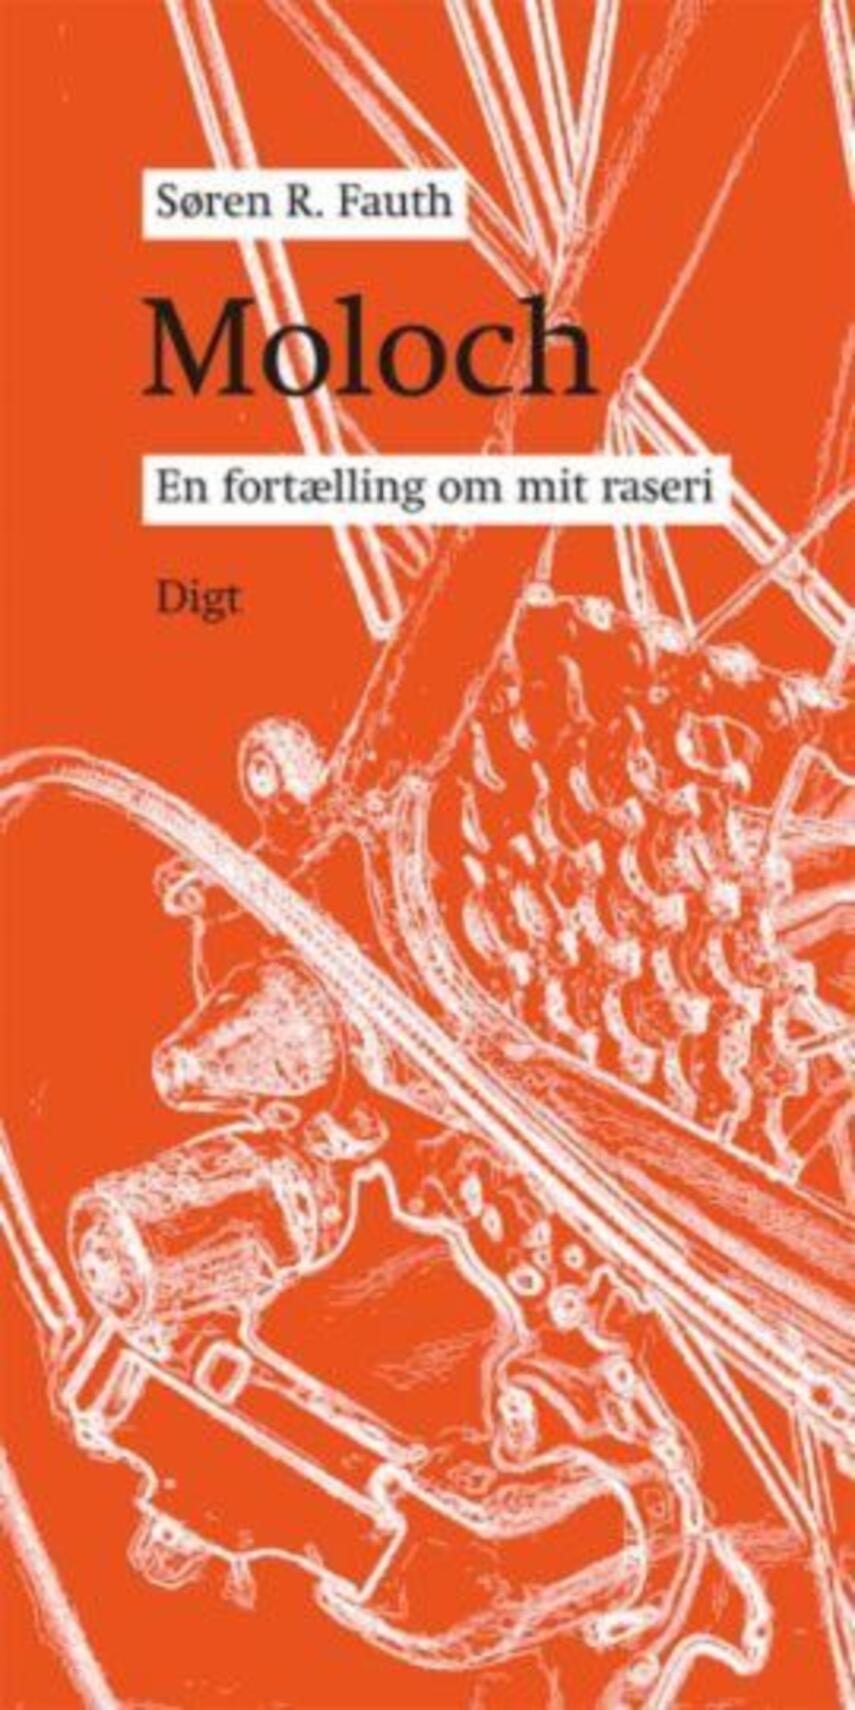 Søren R. Fauth: Moloch : en fortælling om mit raseri : digt. (279)("LÆSETASKE" - udlånes kun til Læsekredse) (Læsetaske)